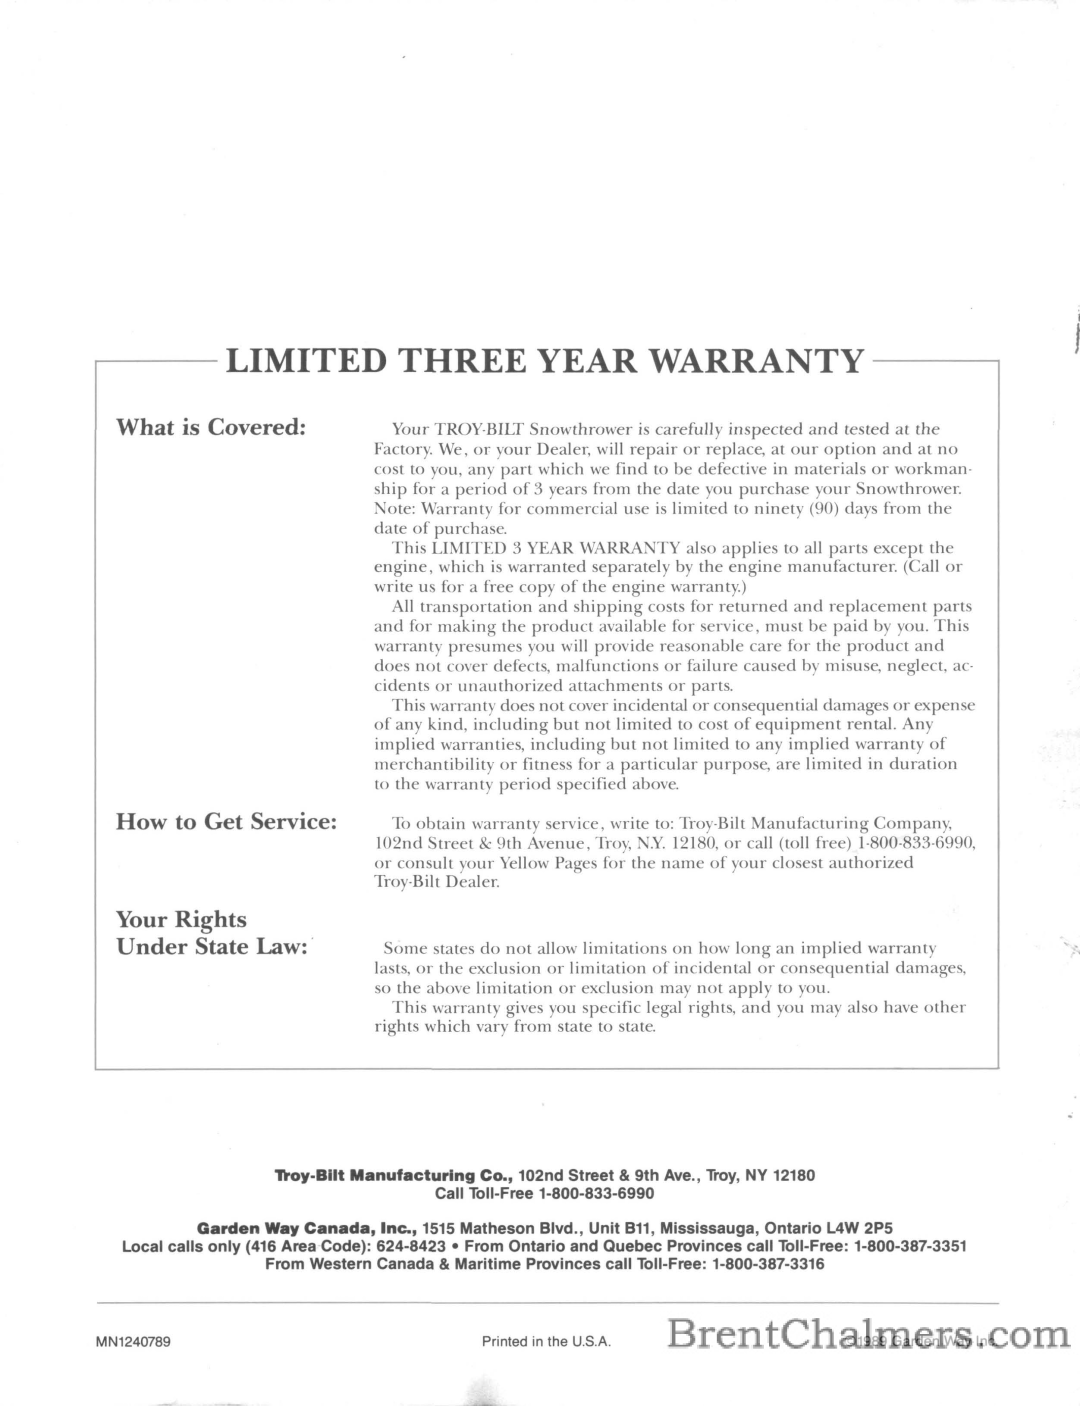 Troy-Bilt 5210R manual Limited Three Year Warranty 